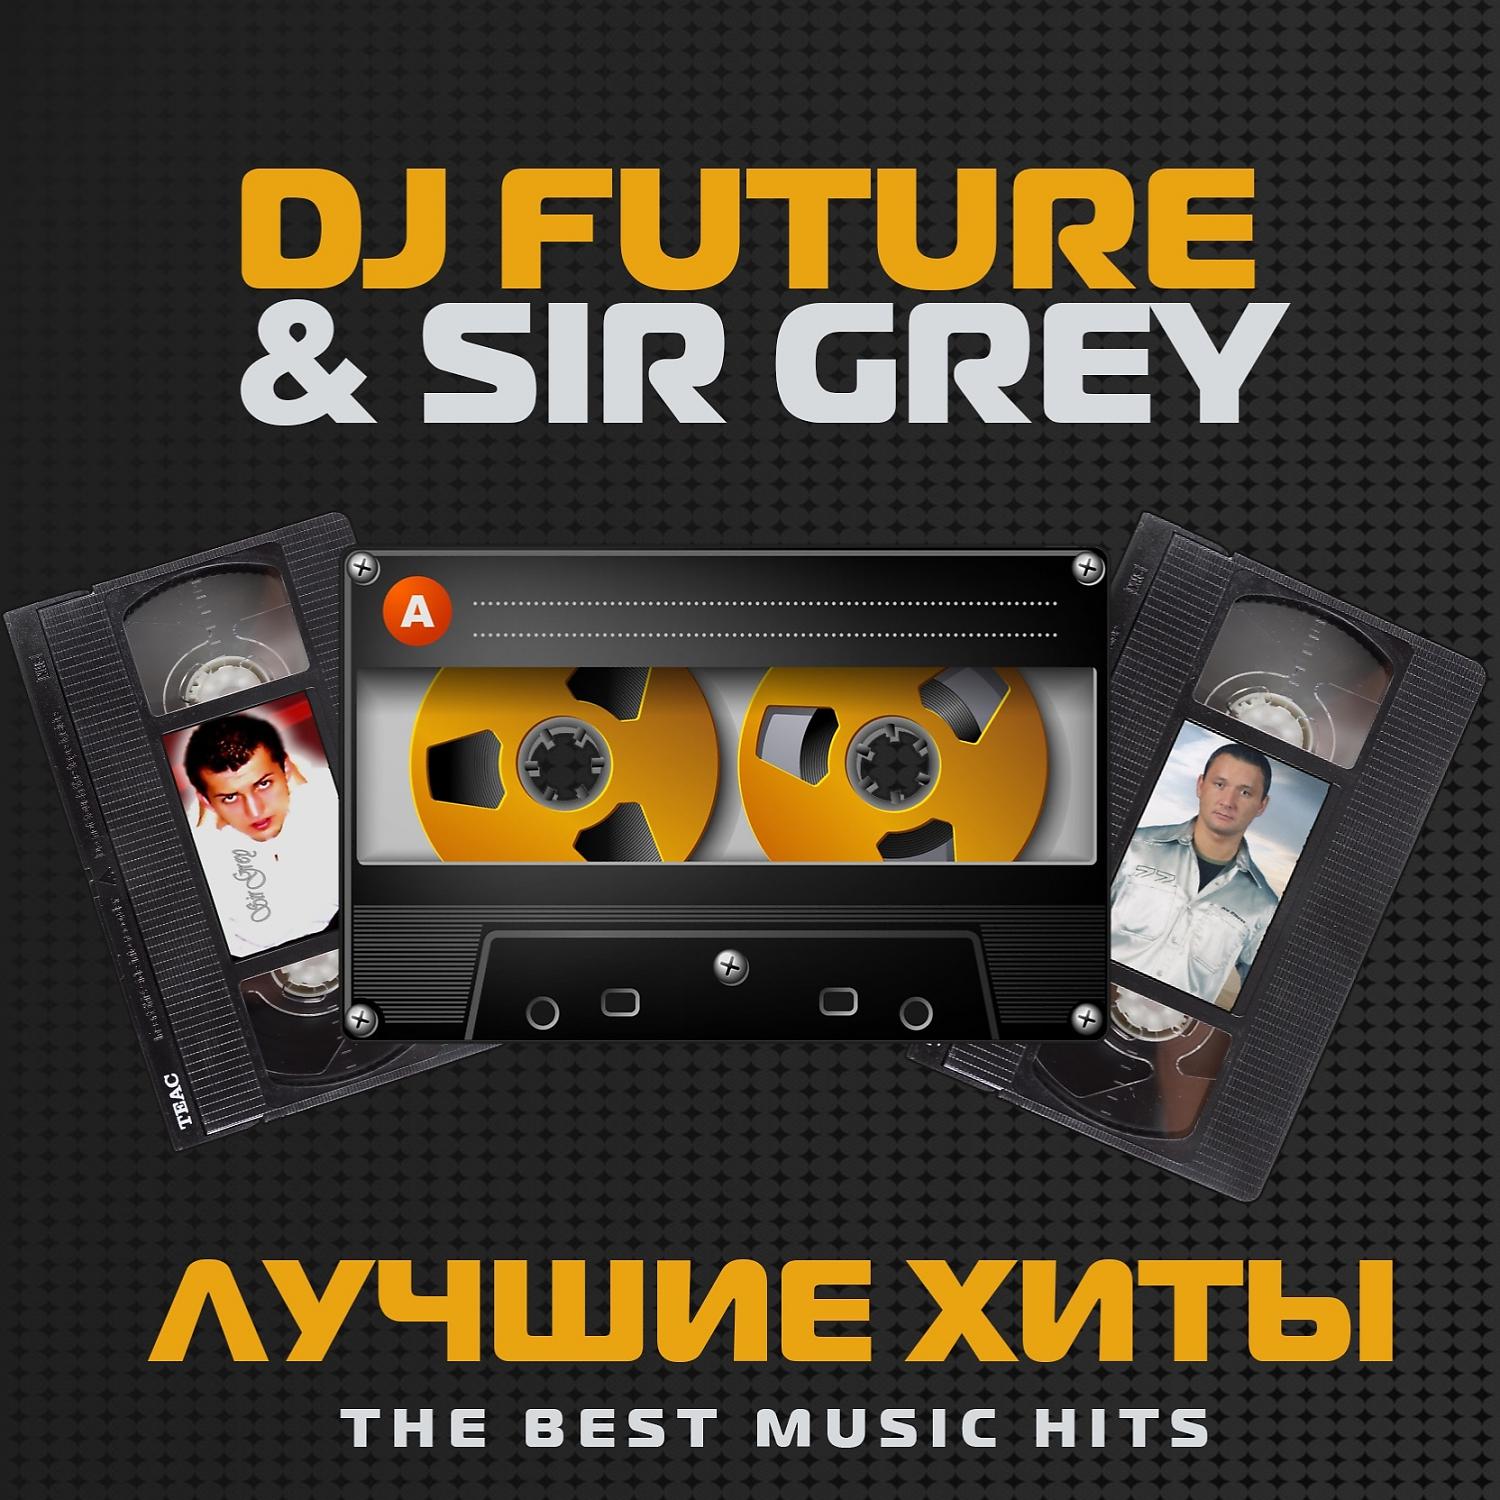 Dj futures. Диджей Future. Грей сир. Грей дискотека. DJ Future & Sir Grey - путь в небеса (2003).